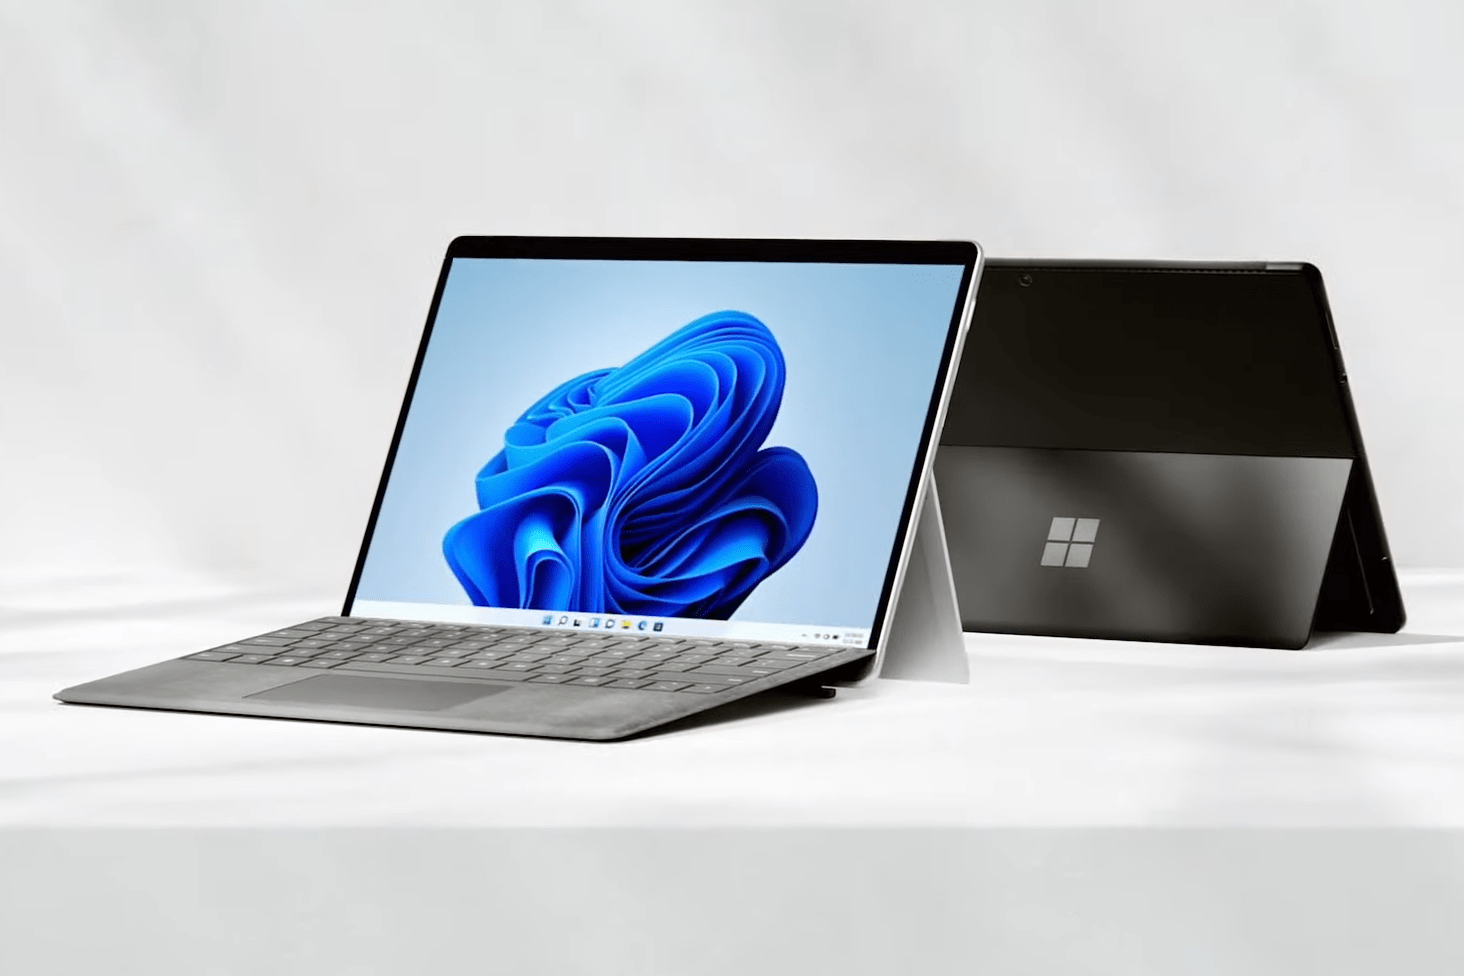 Microsoft Surface Pro 8 - 11. generacja układów Intel, ekran 120 Hz i Thunderbolt 4 od 1 099 dolarów